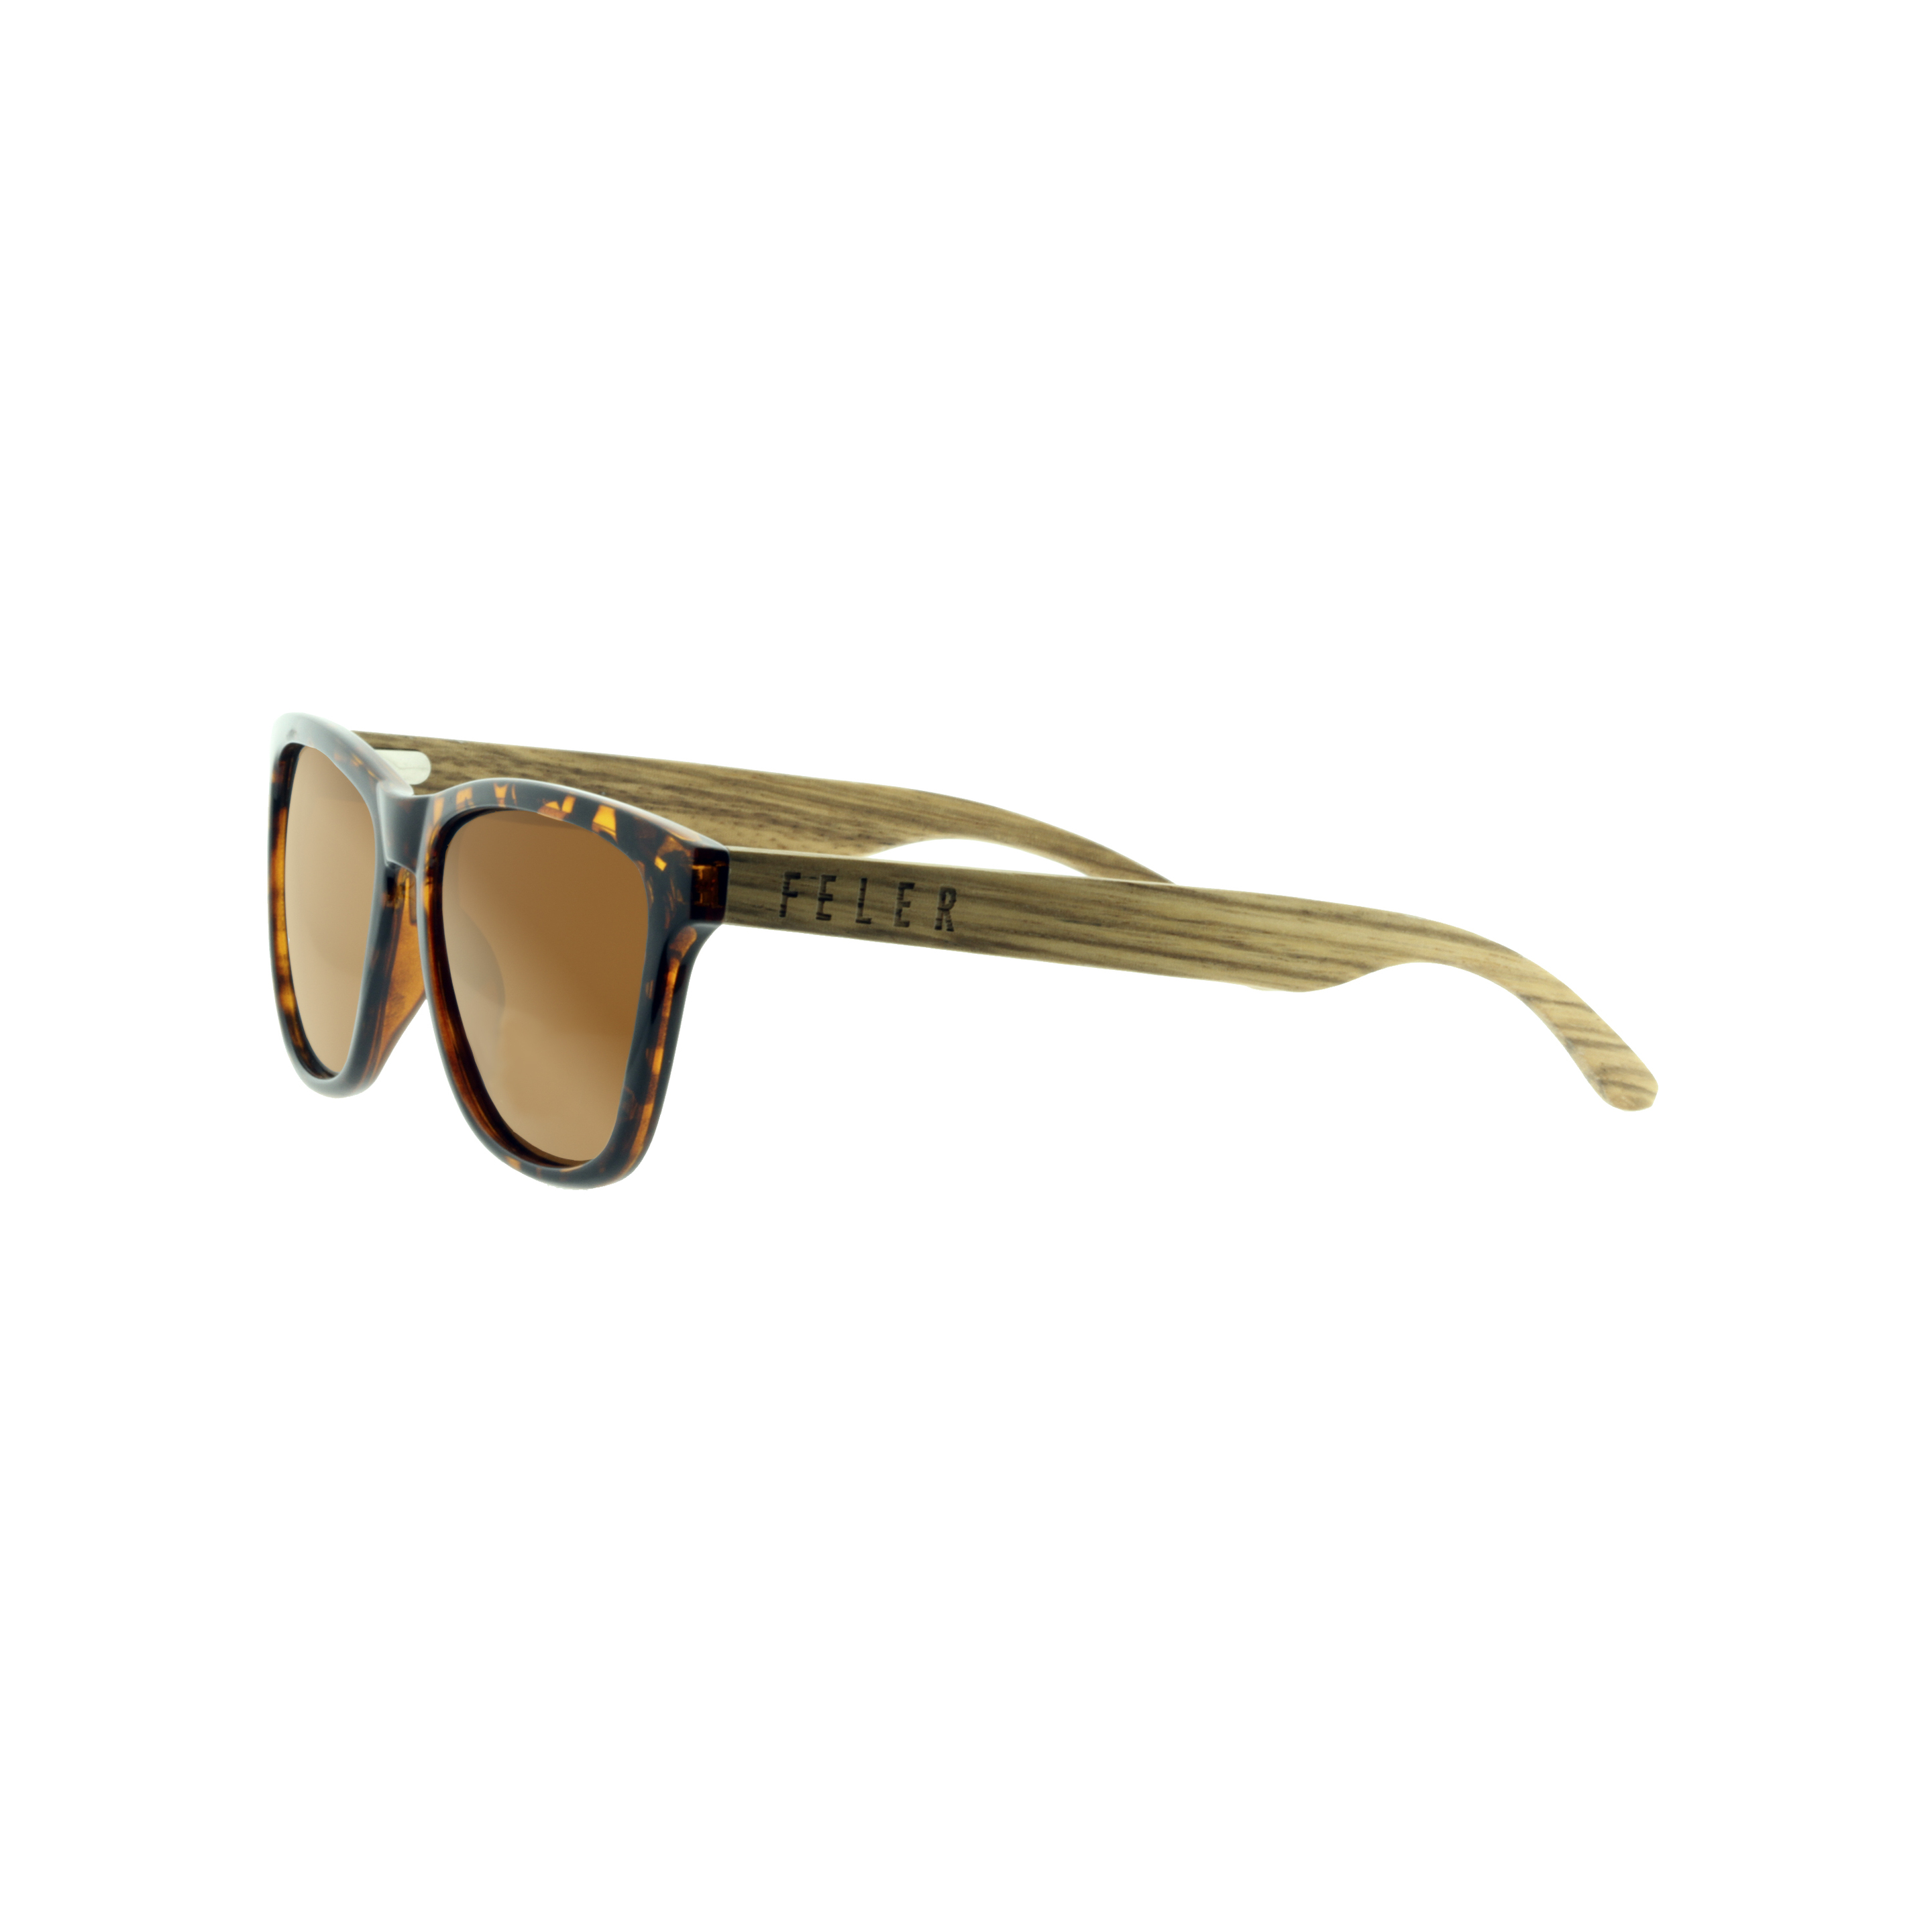 Gafas De Sol Feler | Regular Hibrid 2 - Marron - Cuadrada  MKP